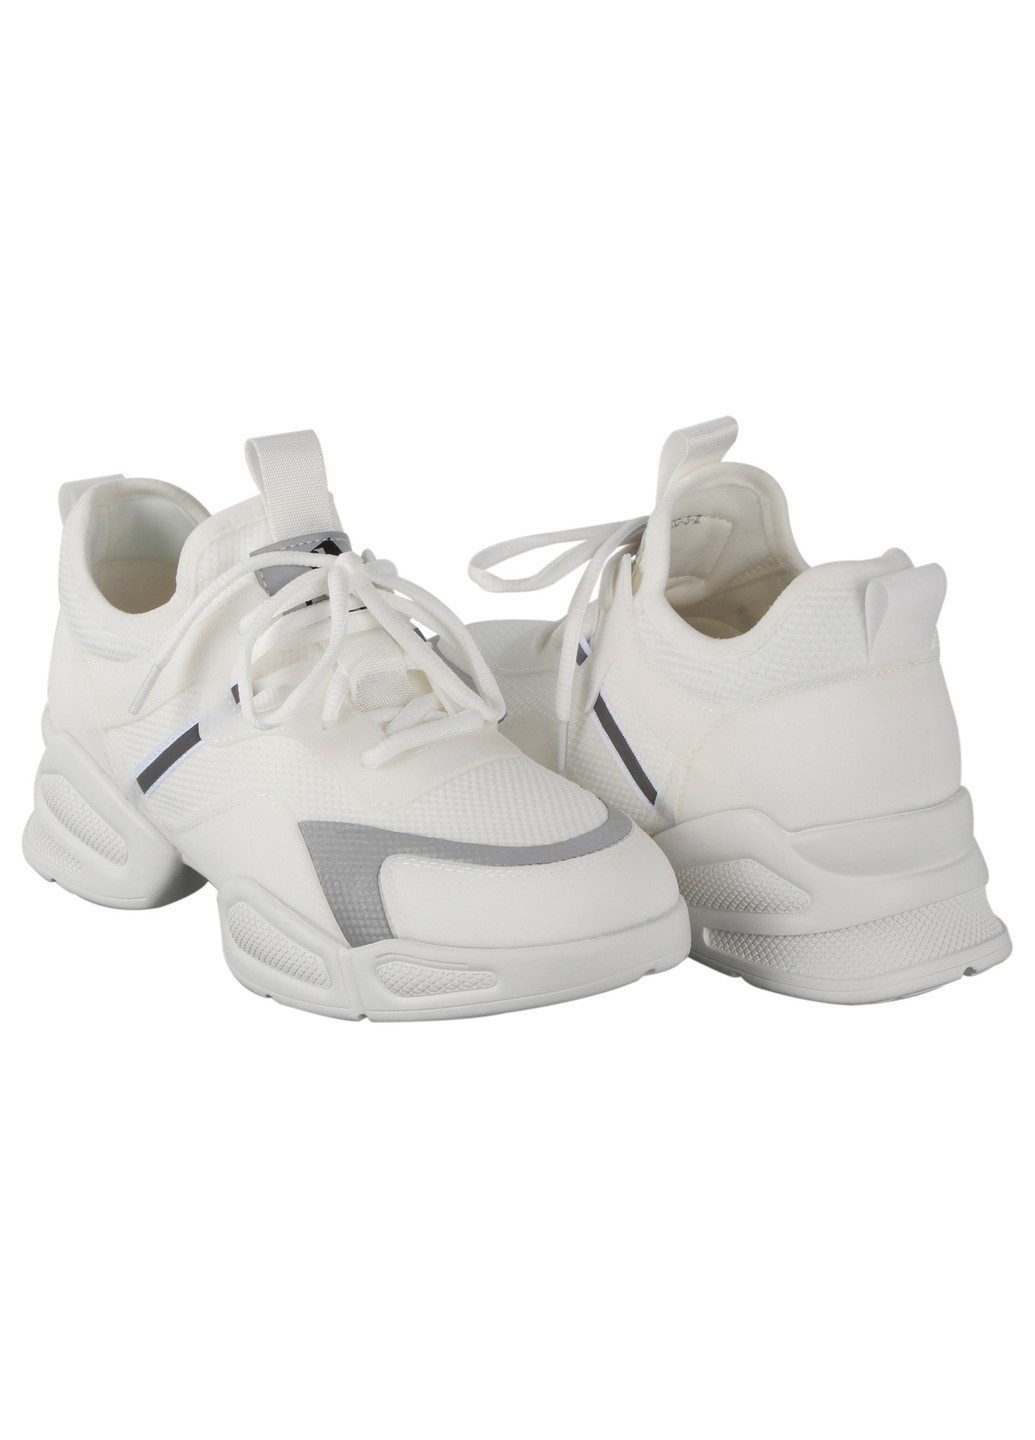 Белые демисезонные женские кроссовки 196822 Buts